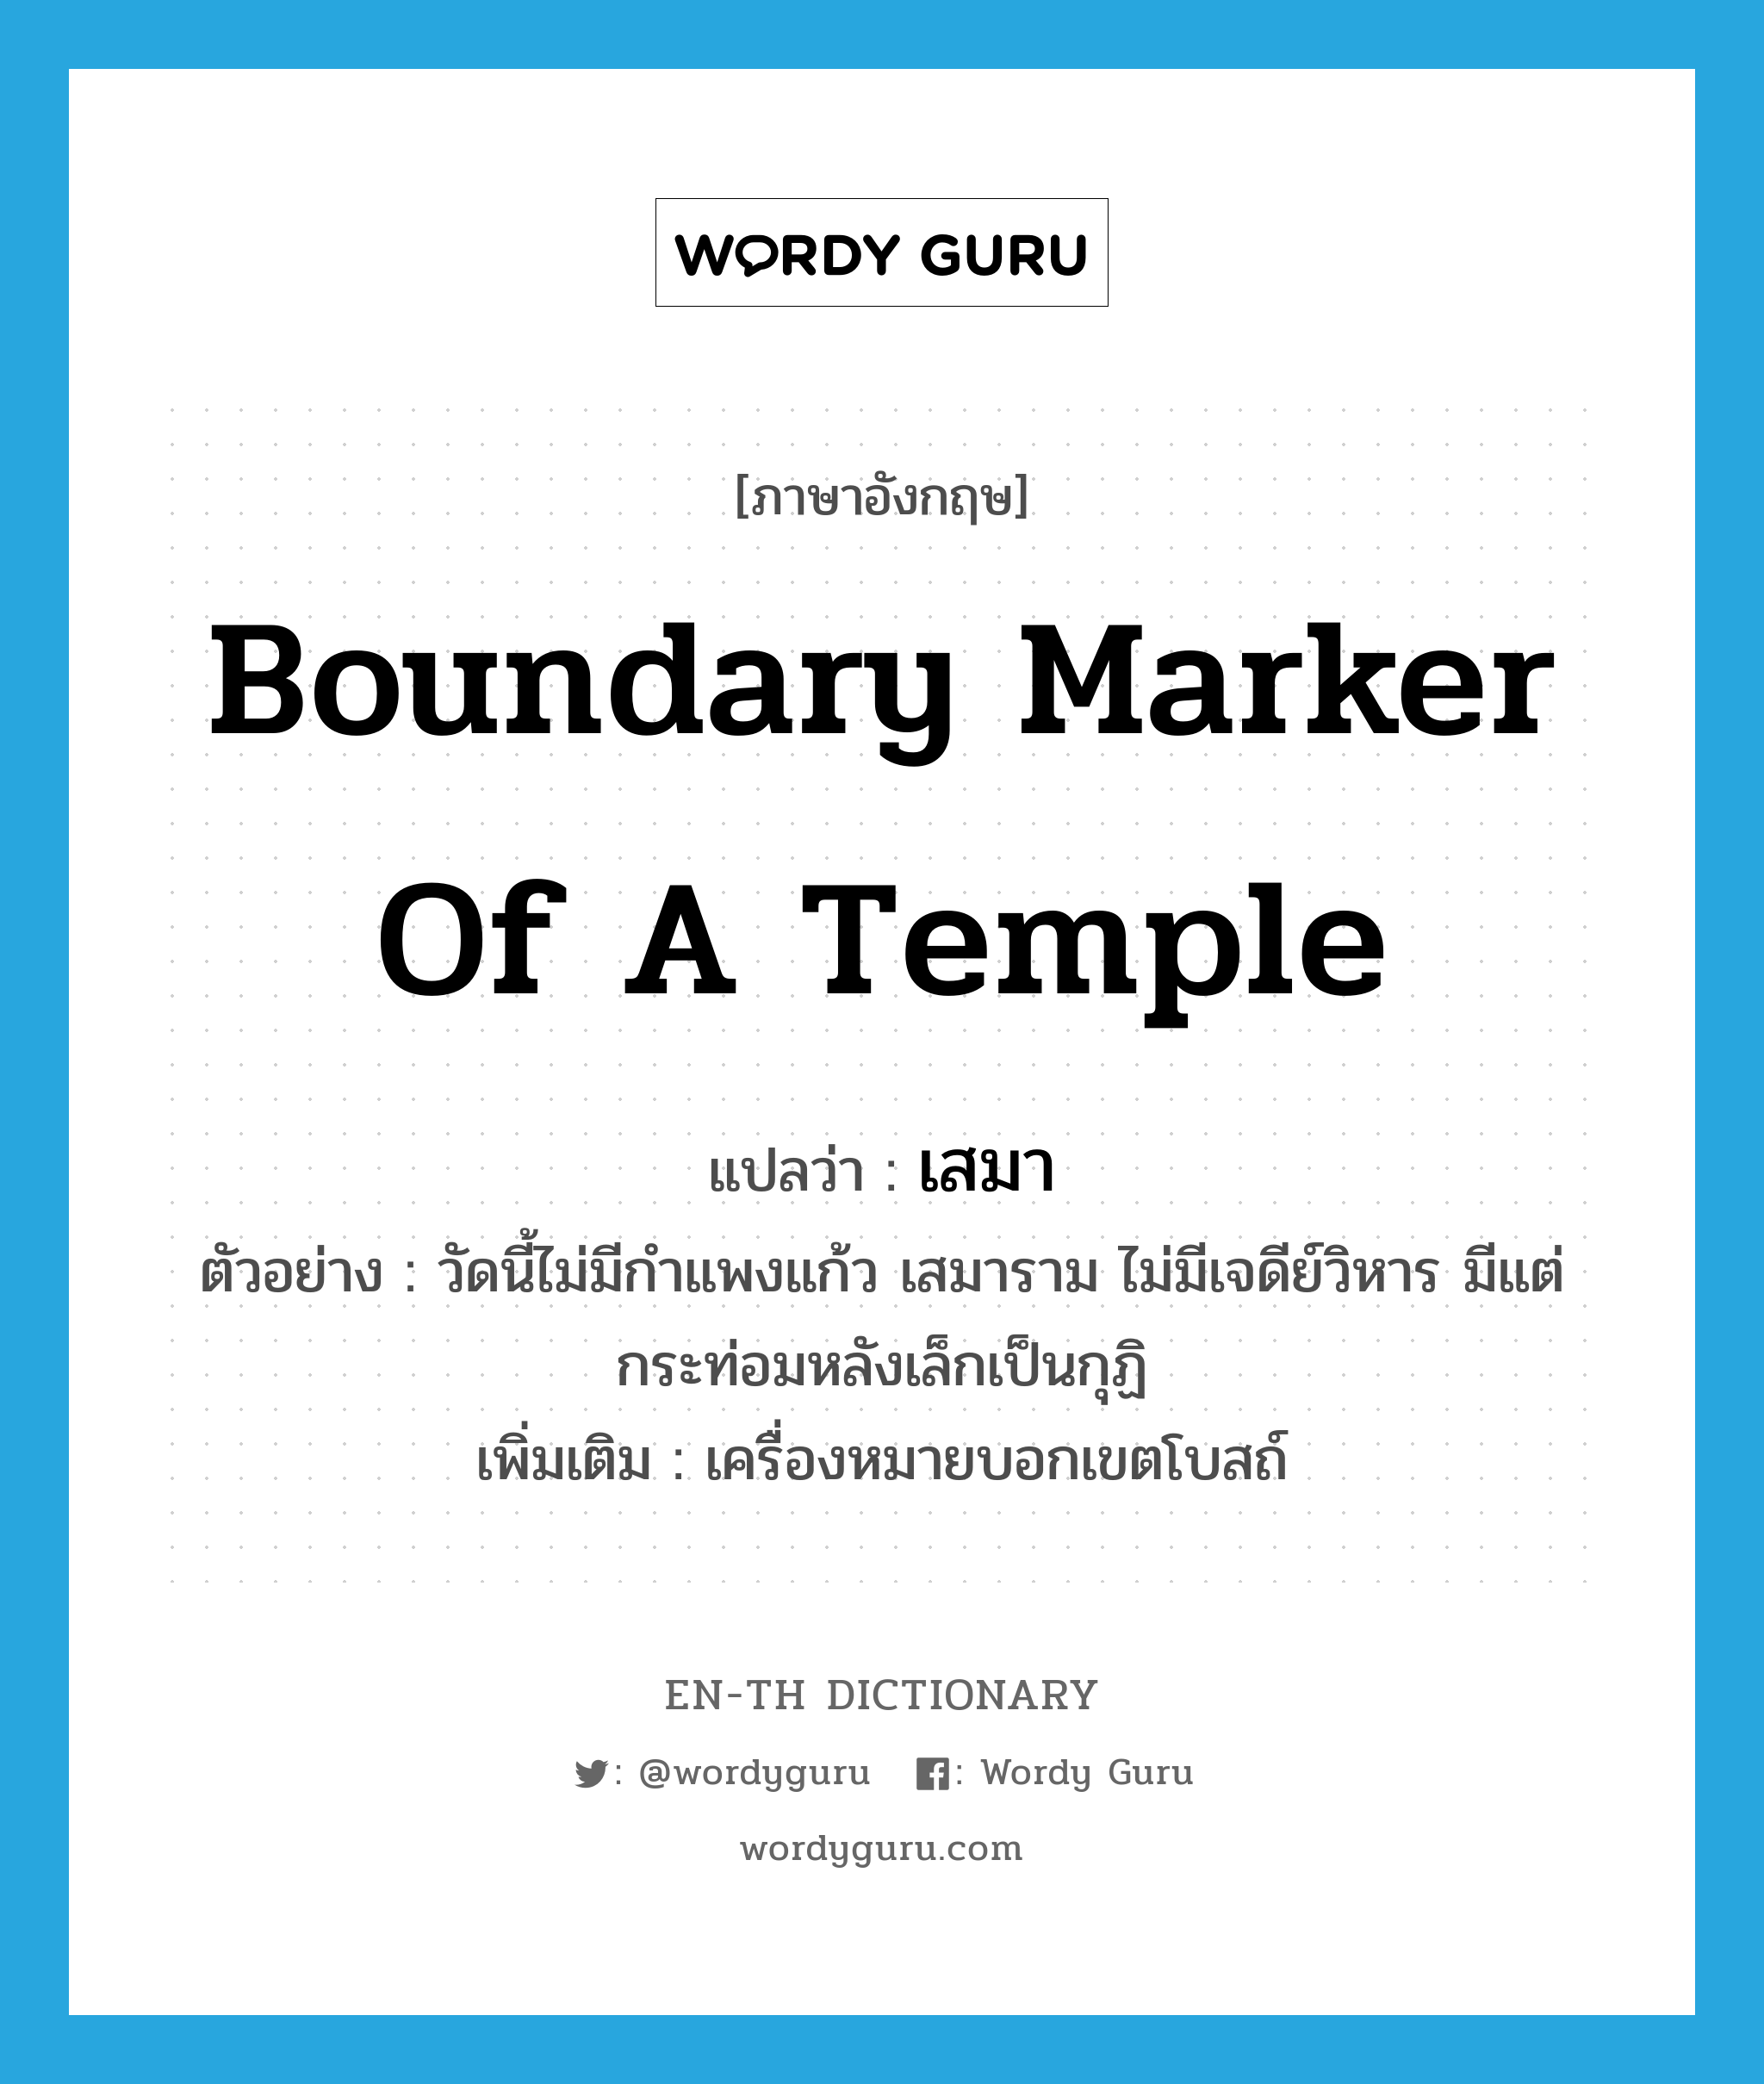 boundary marker of a temple แปลว่า?, คำศัพท์ภาษาอังกฤษ boundary marker of a temple แปลว่า เสมา ประเภท N ตัวอย่าง วัดนี้ไม่มีกำแพงแก้ว เสมาราม ไม่มีเจดีย์วิหาร มีแต่กระท่อมหลังเล็กเป็นกุฏิ เพิ่มเติม เครื่องหมายบอกเขตโบสถ์ หมวด N